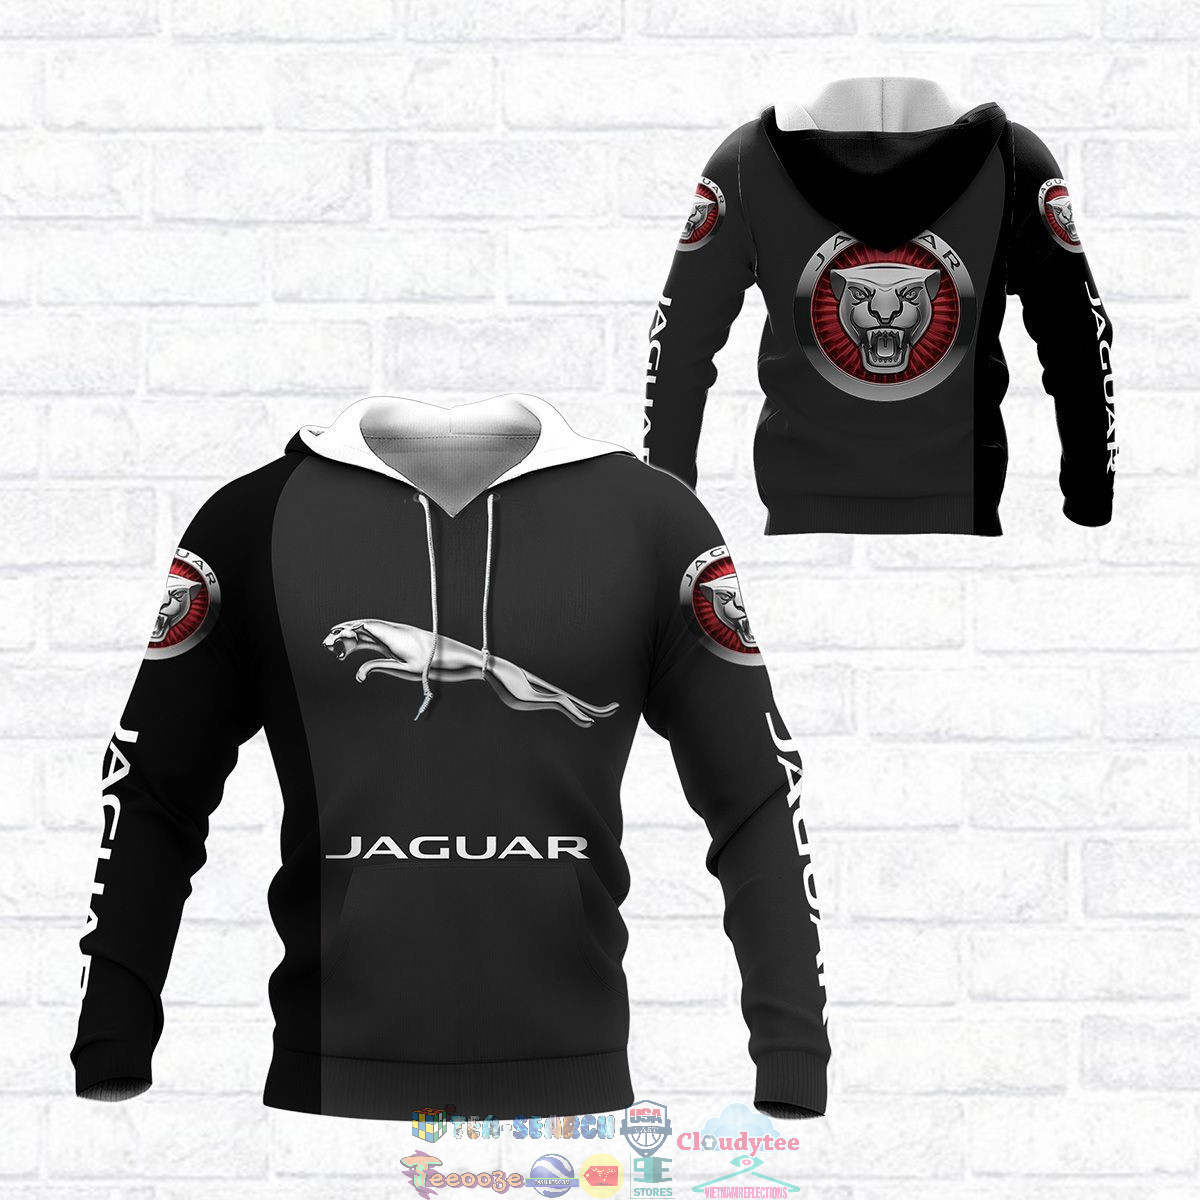 Jaguar ver 9 3D hoodie and t-shirt – Saleoff